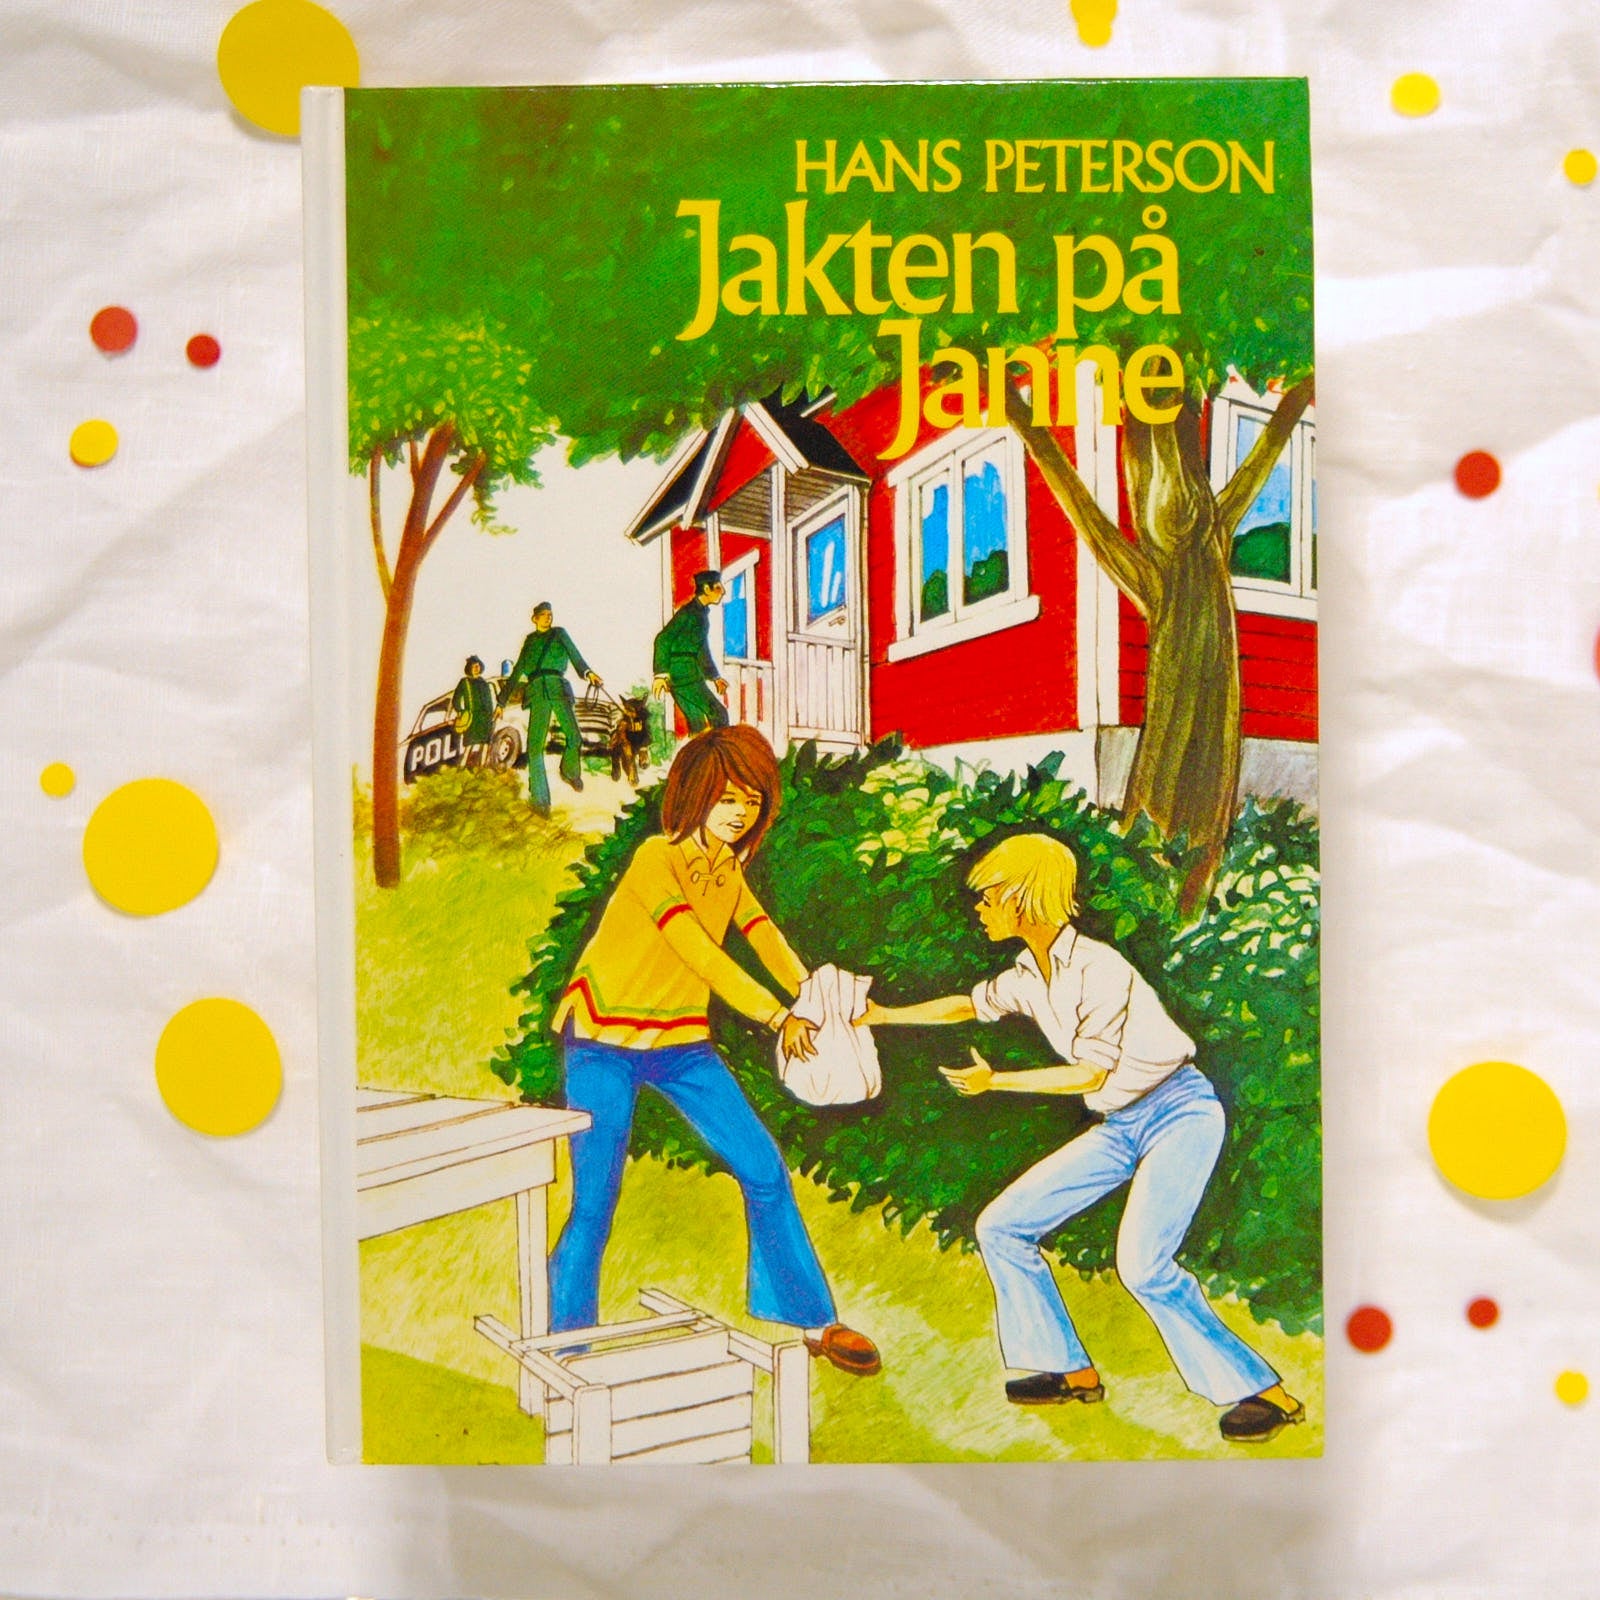 Jakten på Janne av Hans Peterson